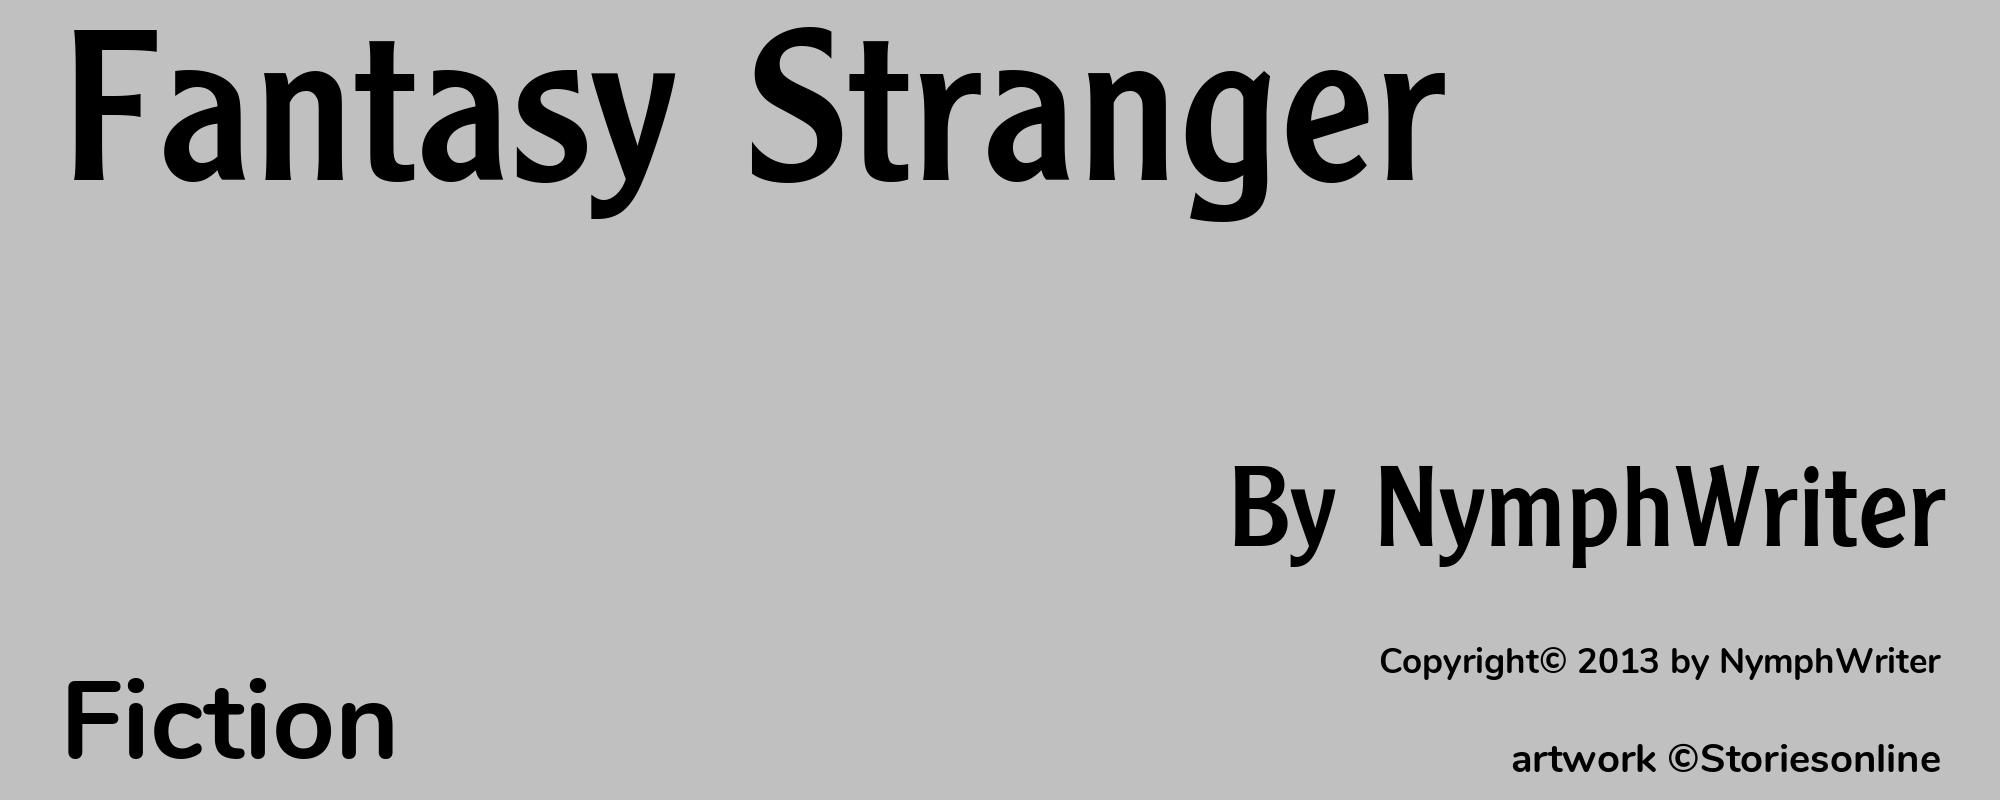 Fantasy Stranger - Cover